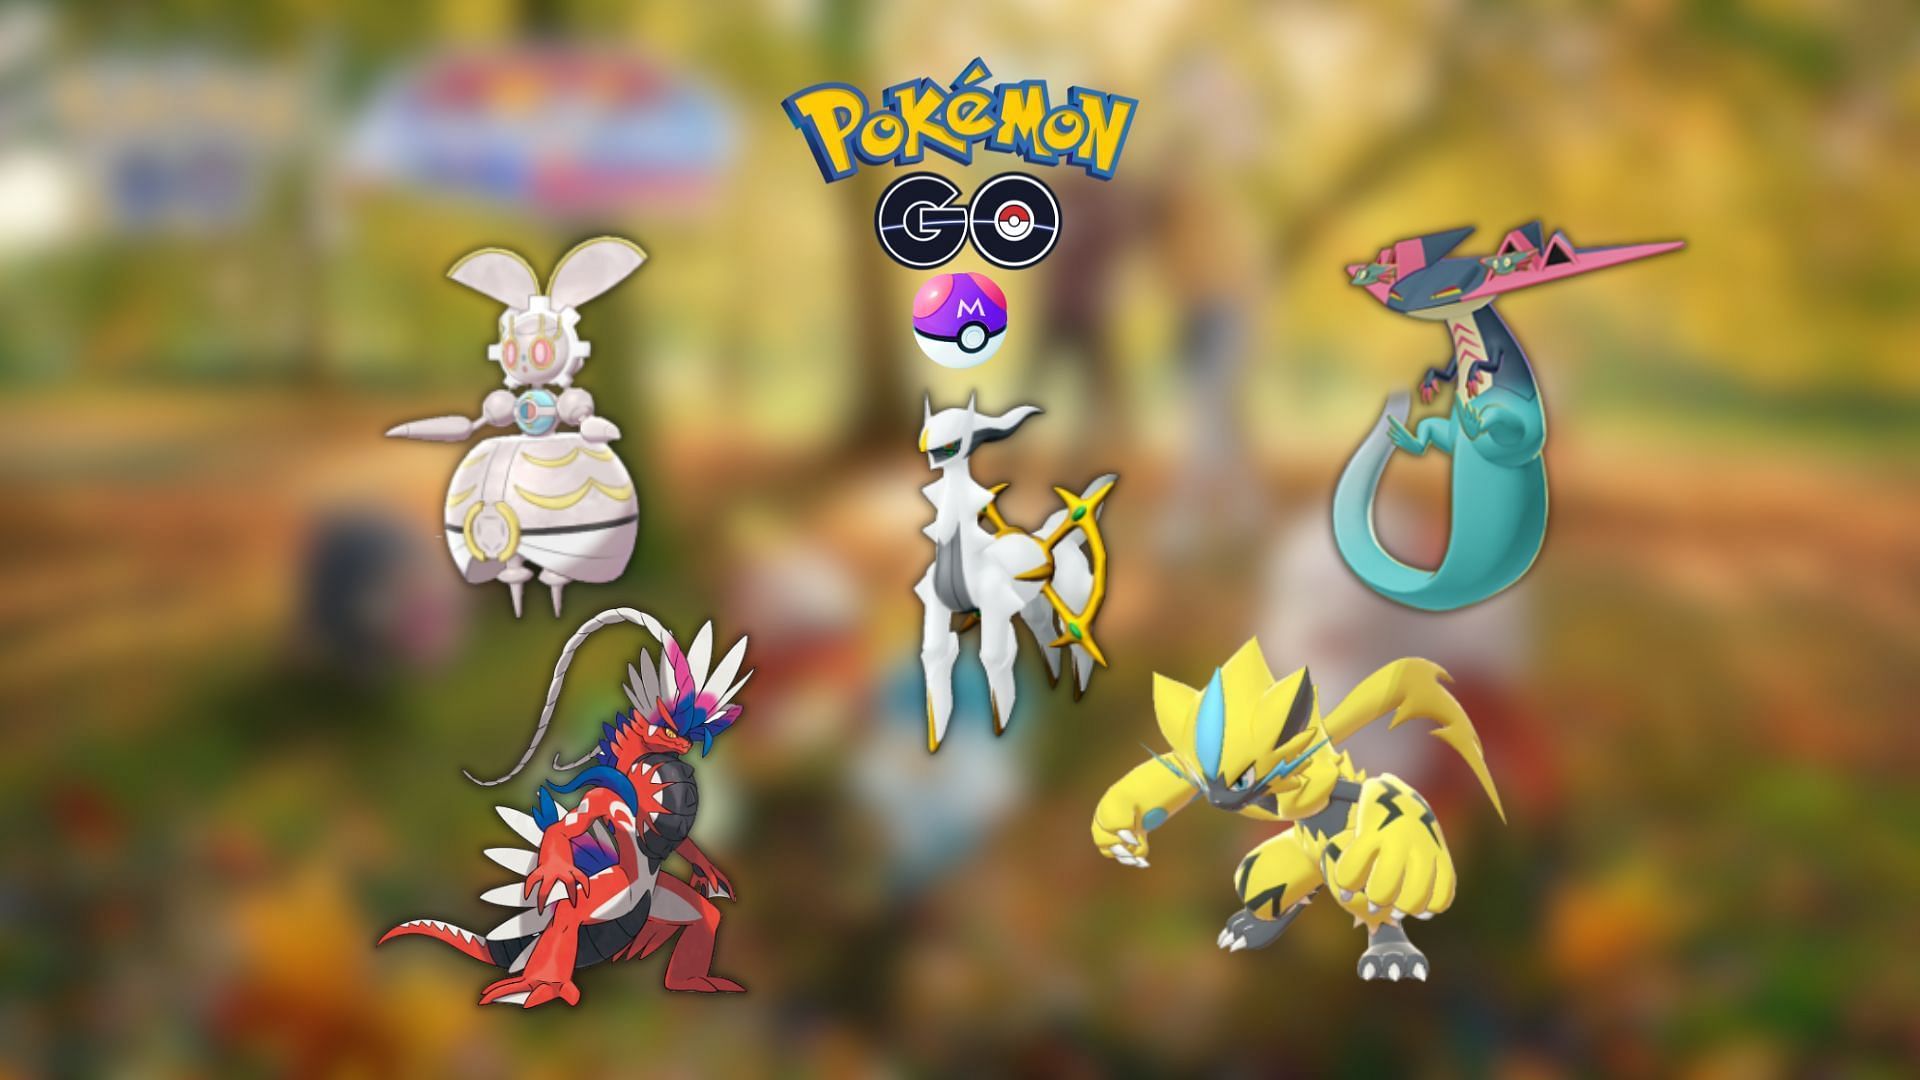 Pseudo-Legendary Pokémon in the Pokémon GO Meta Game